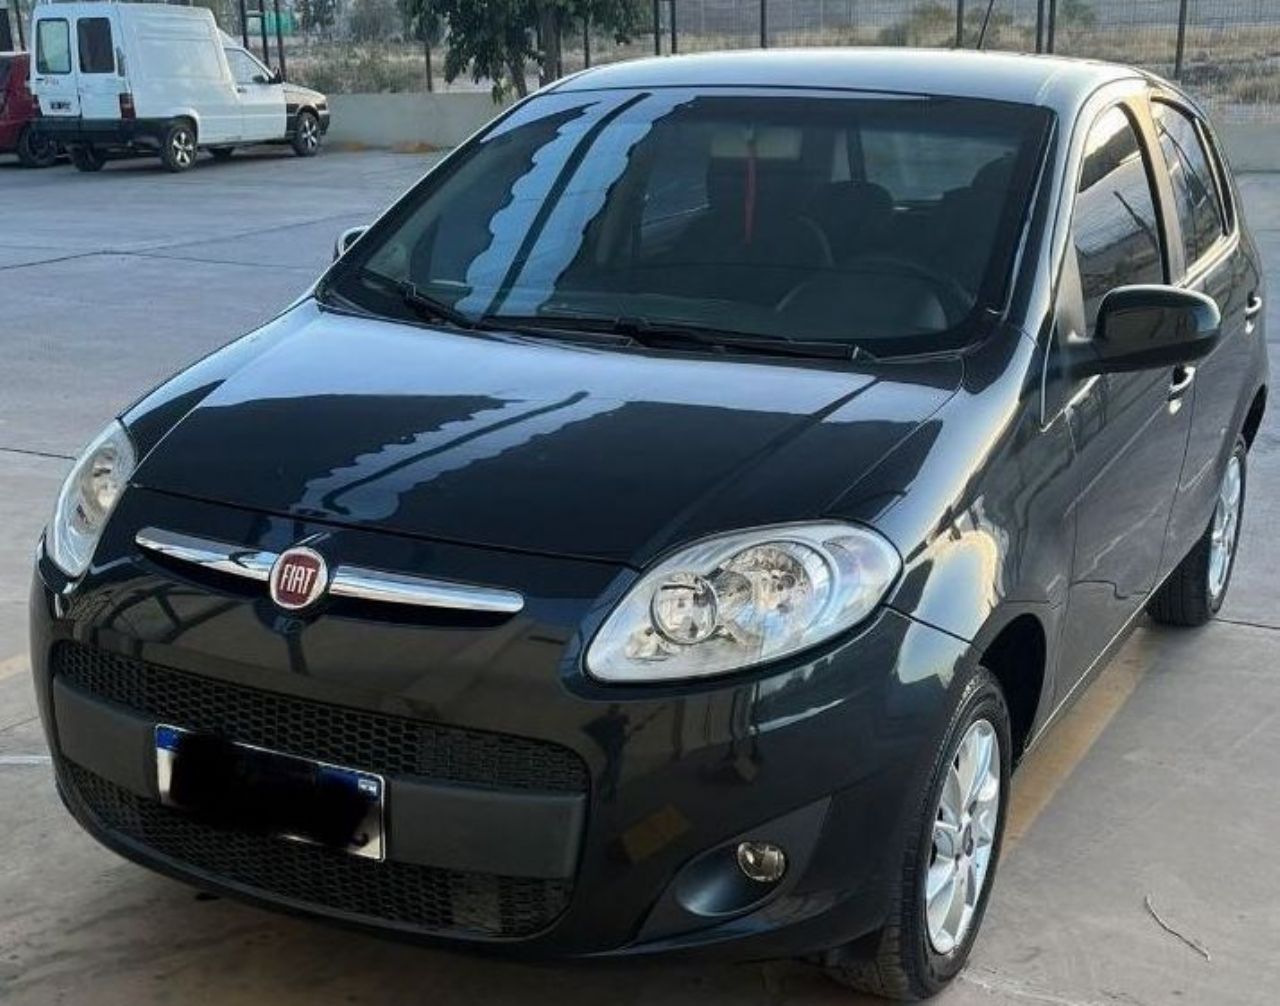 Fiat Nuevo Palio Usado en Mendoza, deRuedas